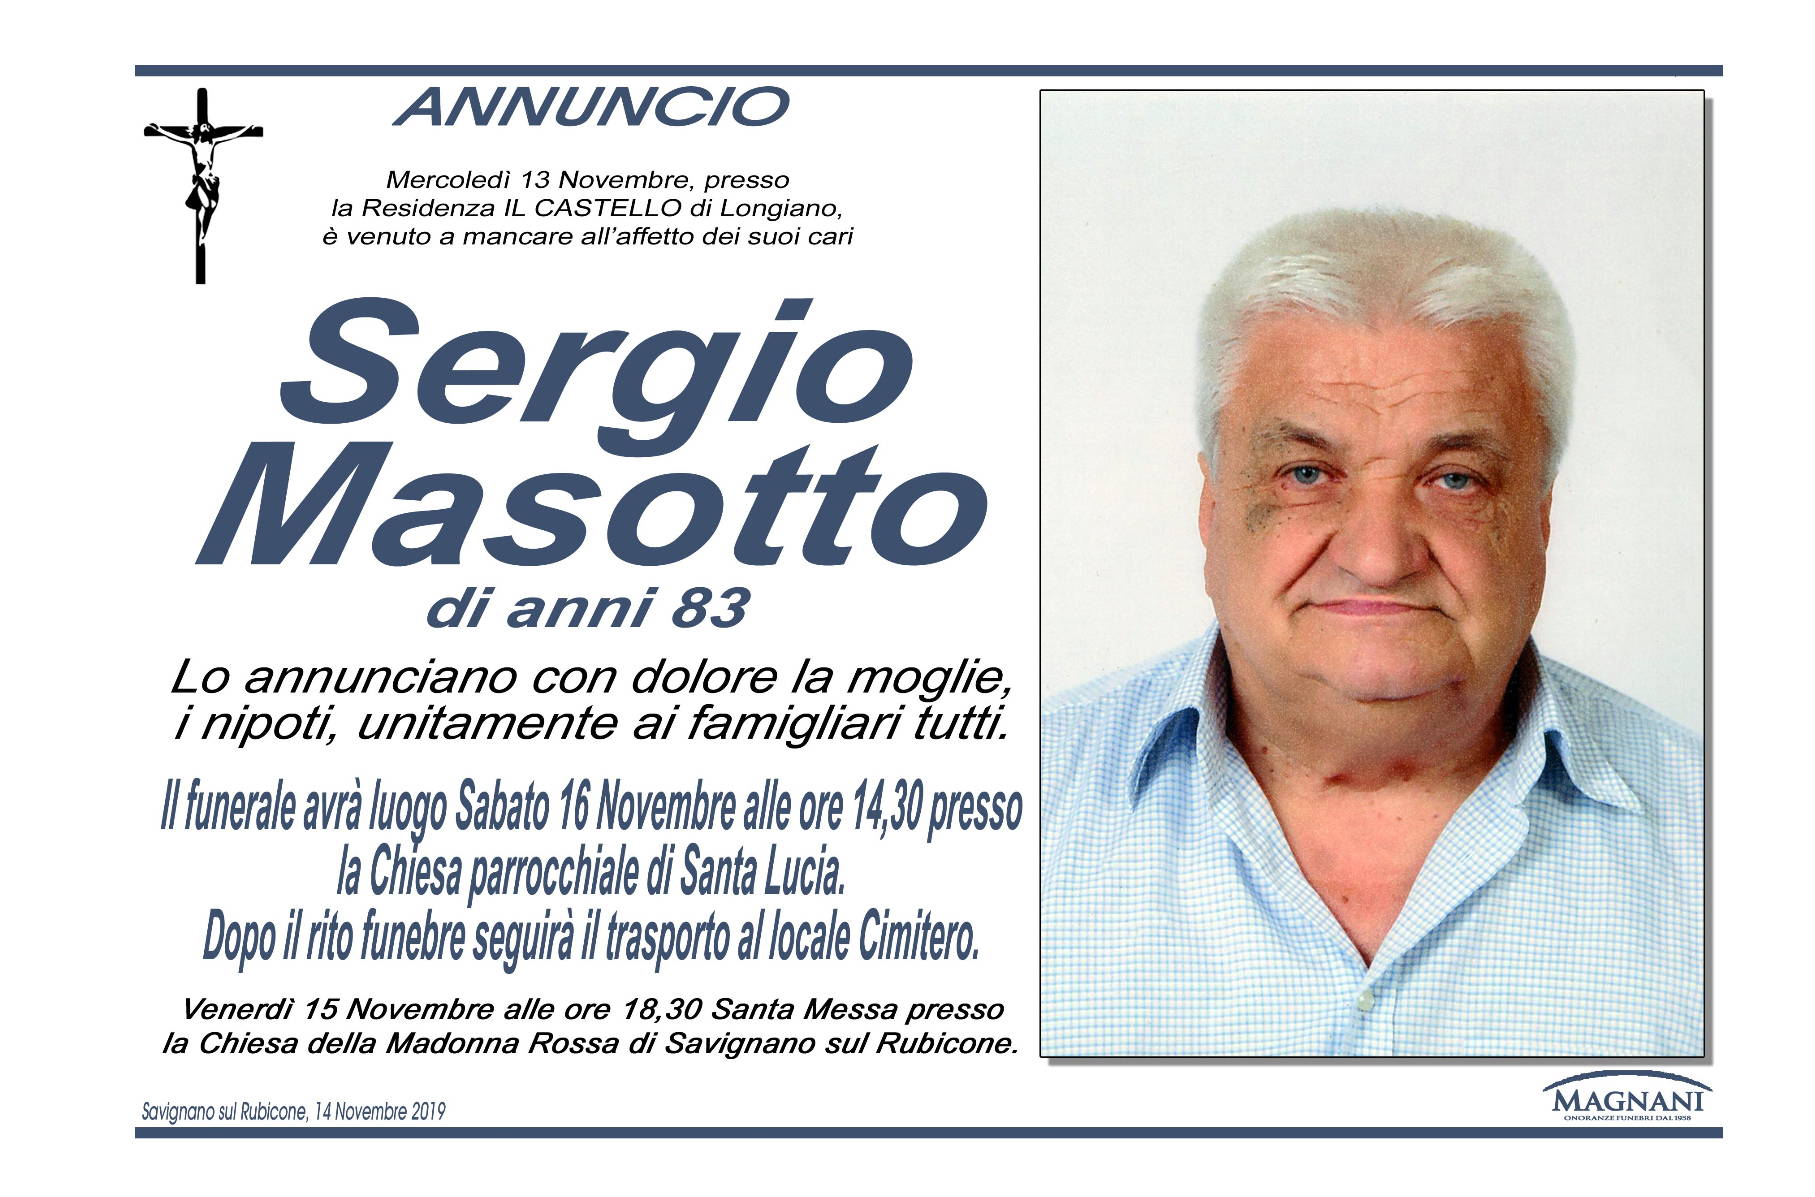 Sergio Masotto